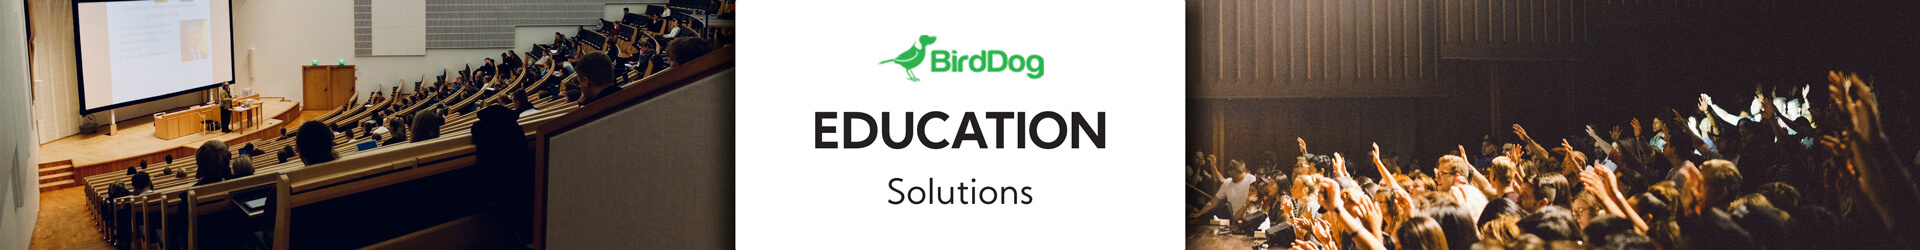 BirdDog Education